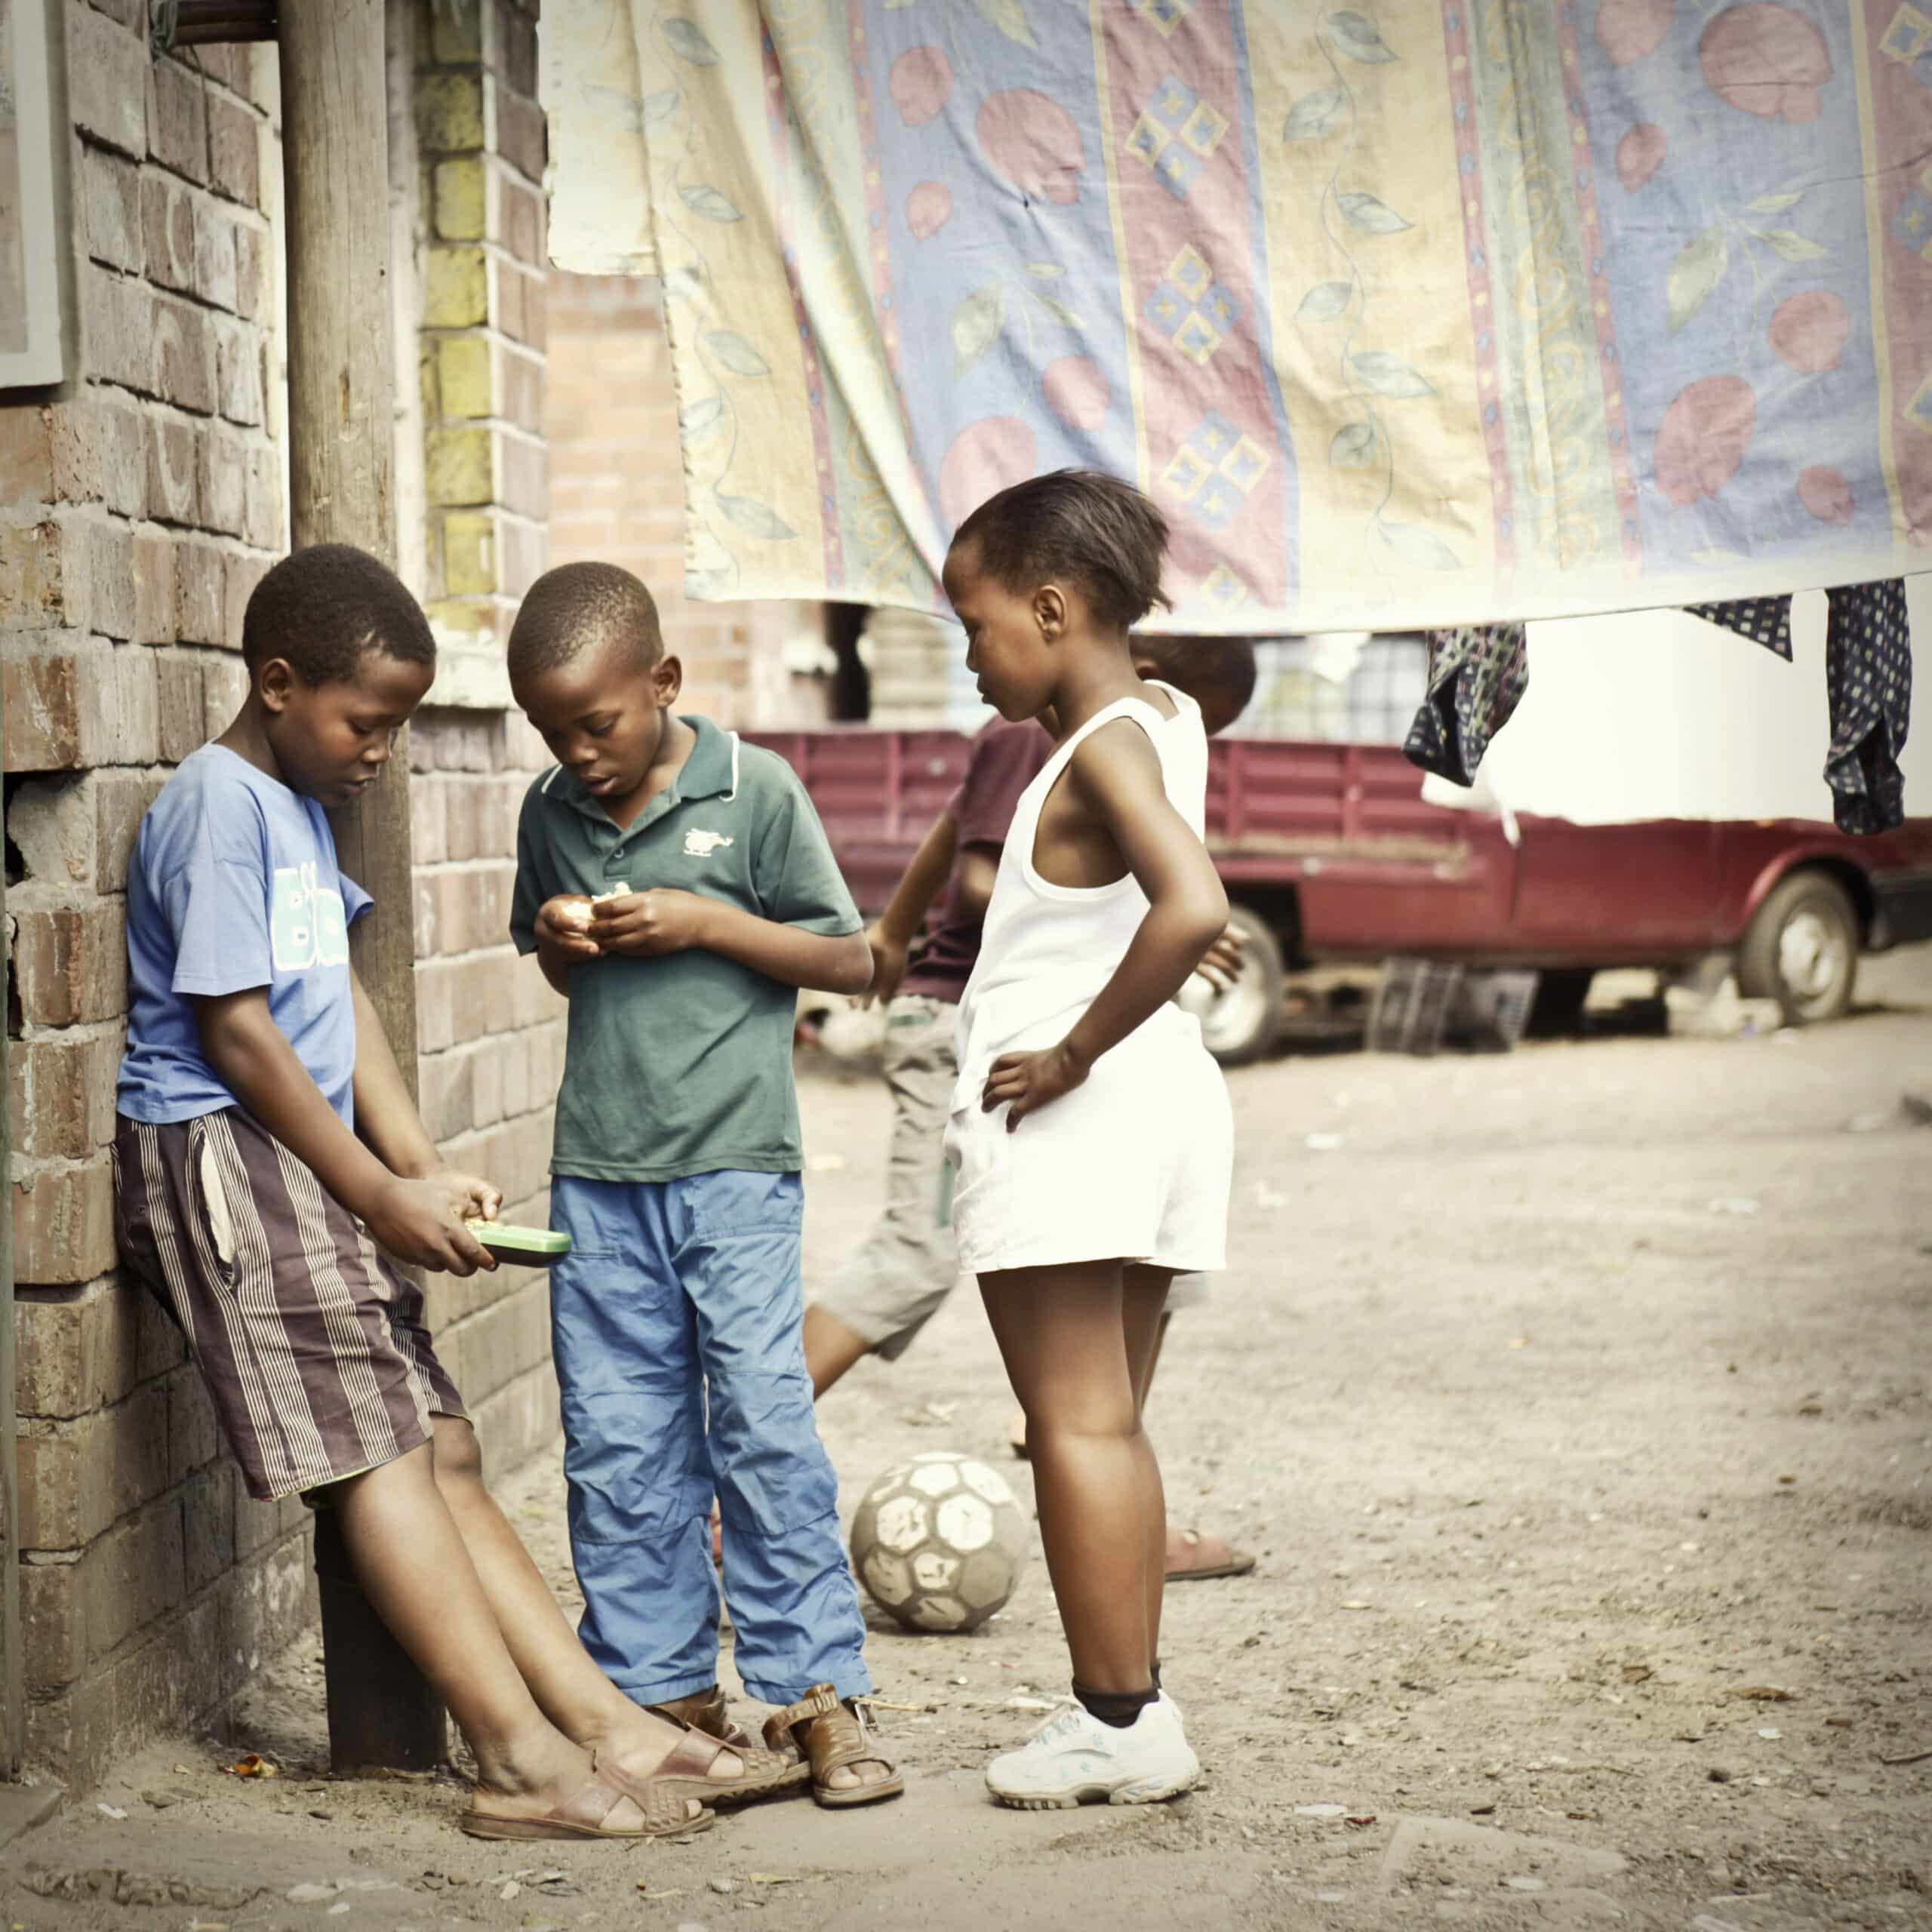 Drei Kinder in einer ländlichen Gasse, ein Mädchen und zwei Jungen, sind in Gespräche und Spiele vertieft und stehen neben einem improvisierten Fußball, in dessen Nähe bunter Stoff hängt. © Fotografie Tomas Rodriguez